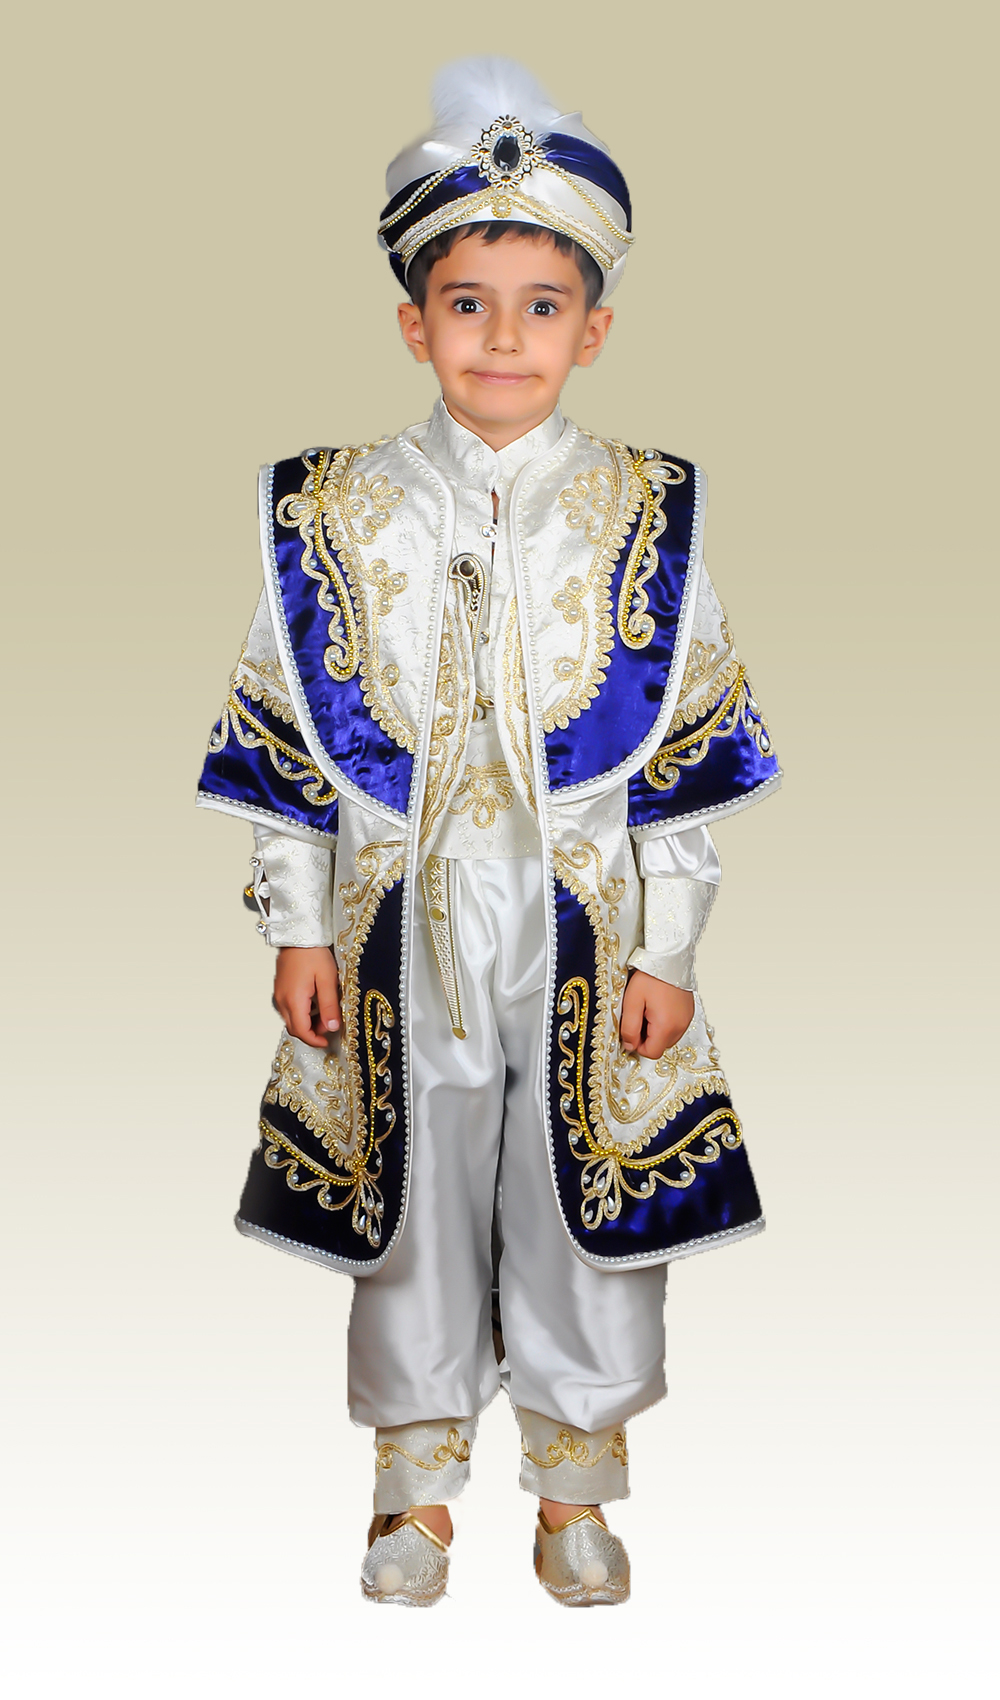 Çocuğunuza Güzel Bir Hatıra Bırakmak İçin Sünnet Kıyafeti Seçimine Dikkat Edin